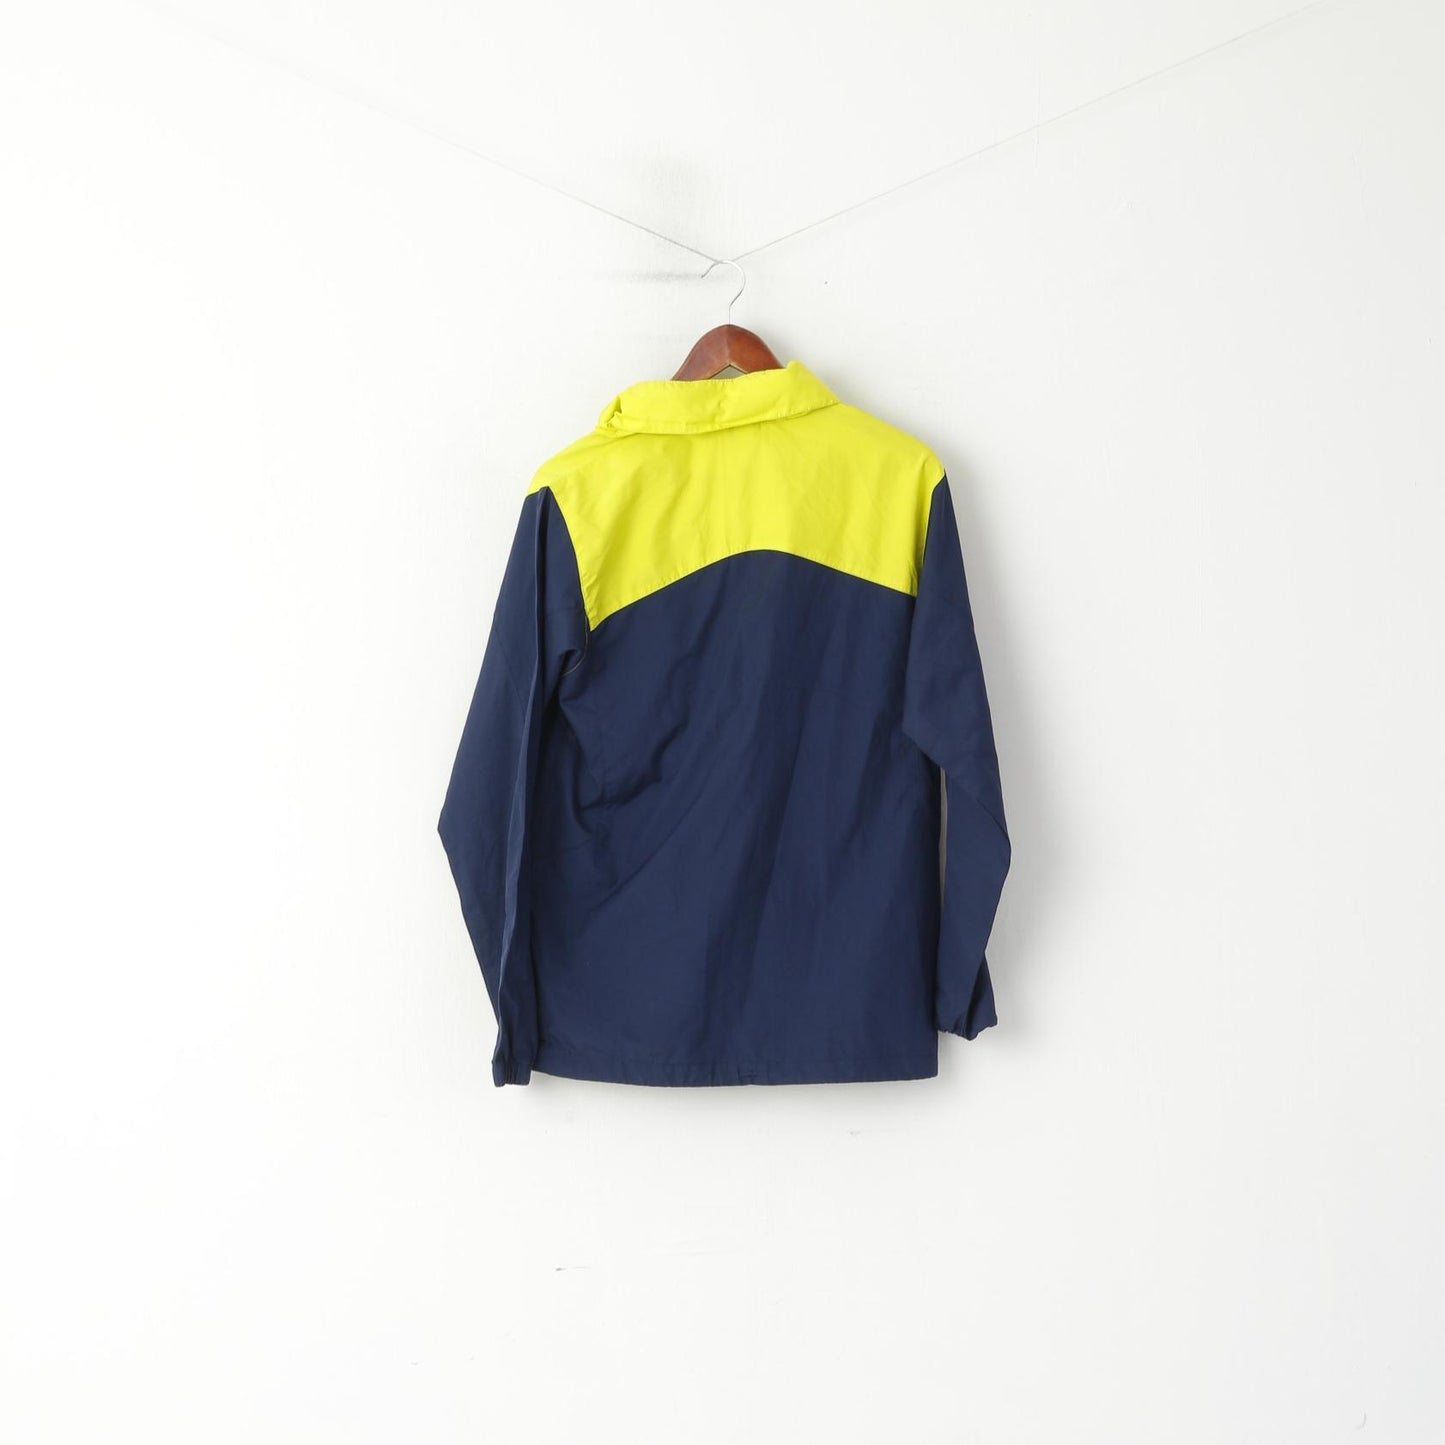 Umbro Men S Jacket Navy Yellow Sunderland Football Zip Up Sportswear Top